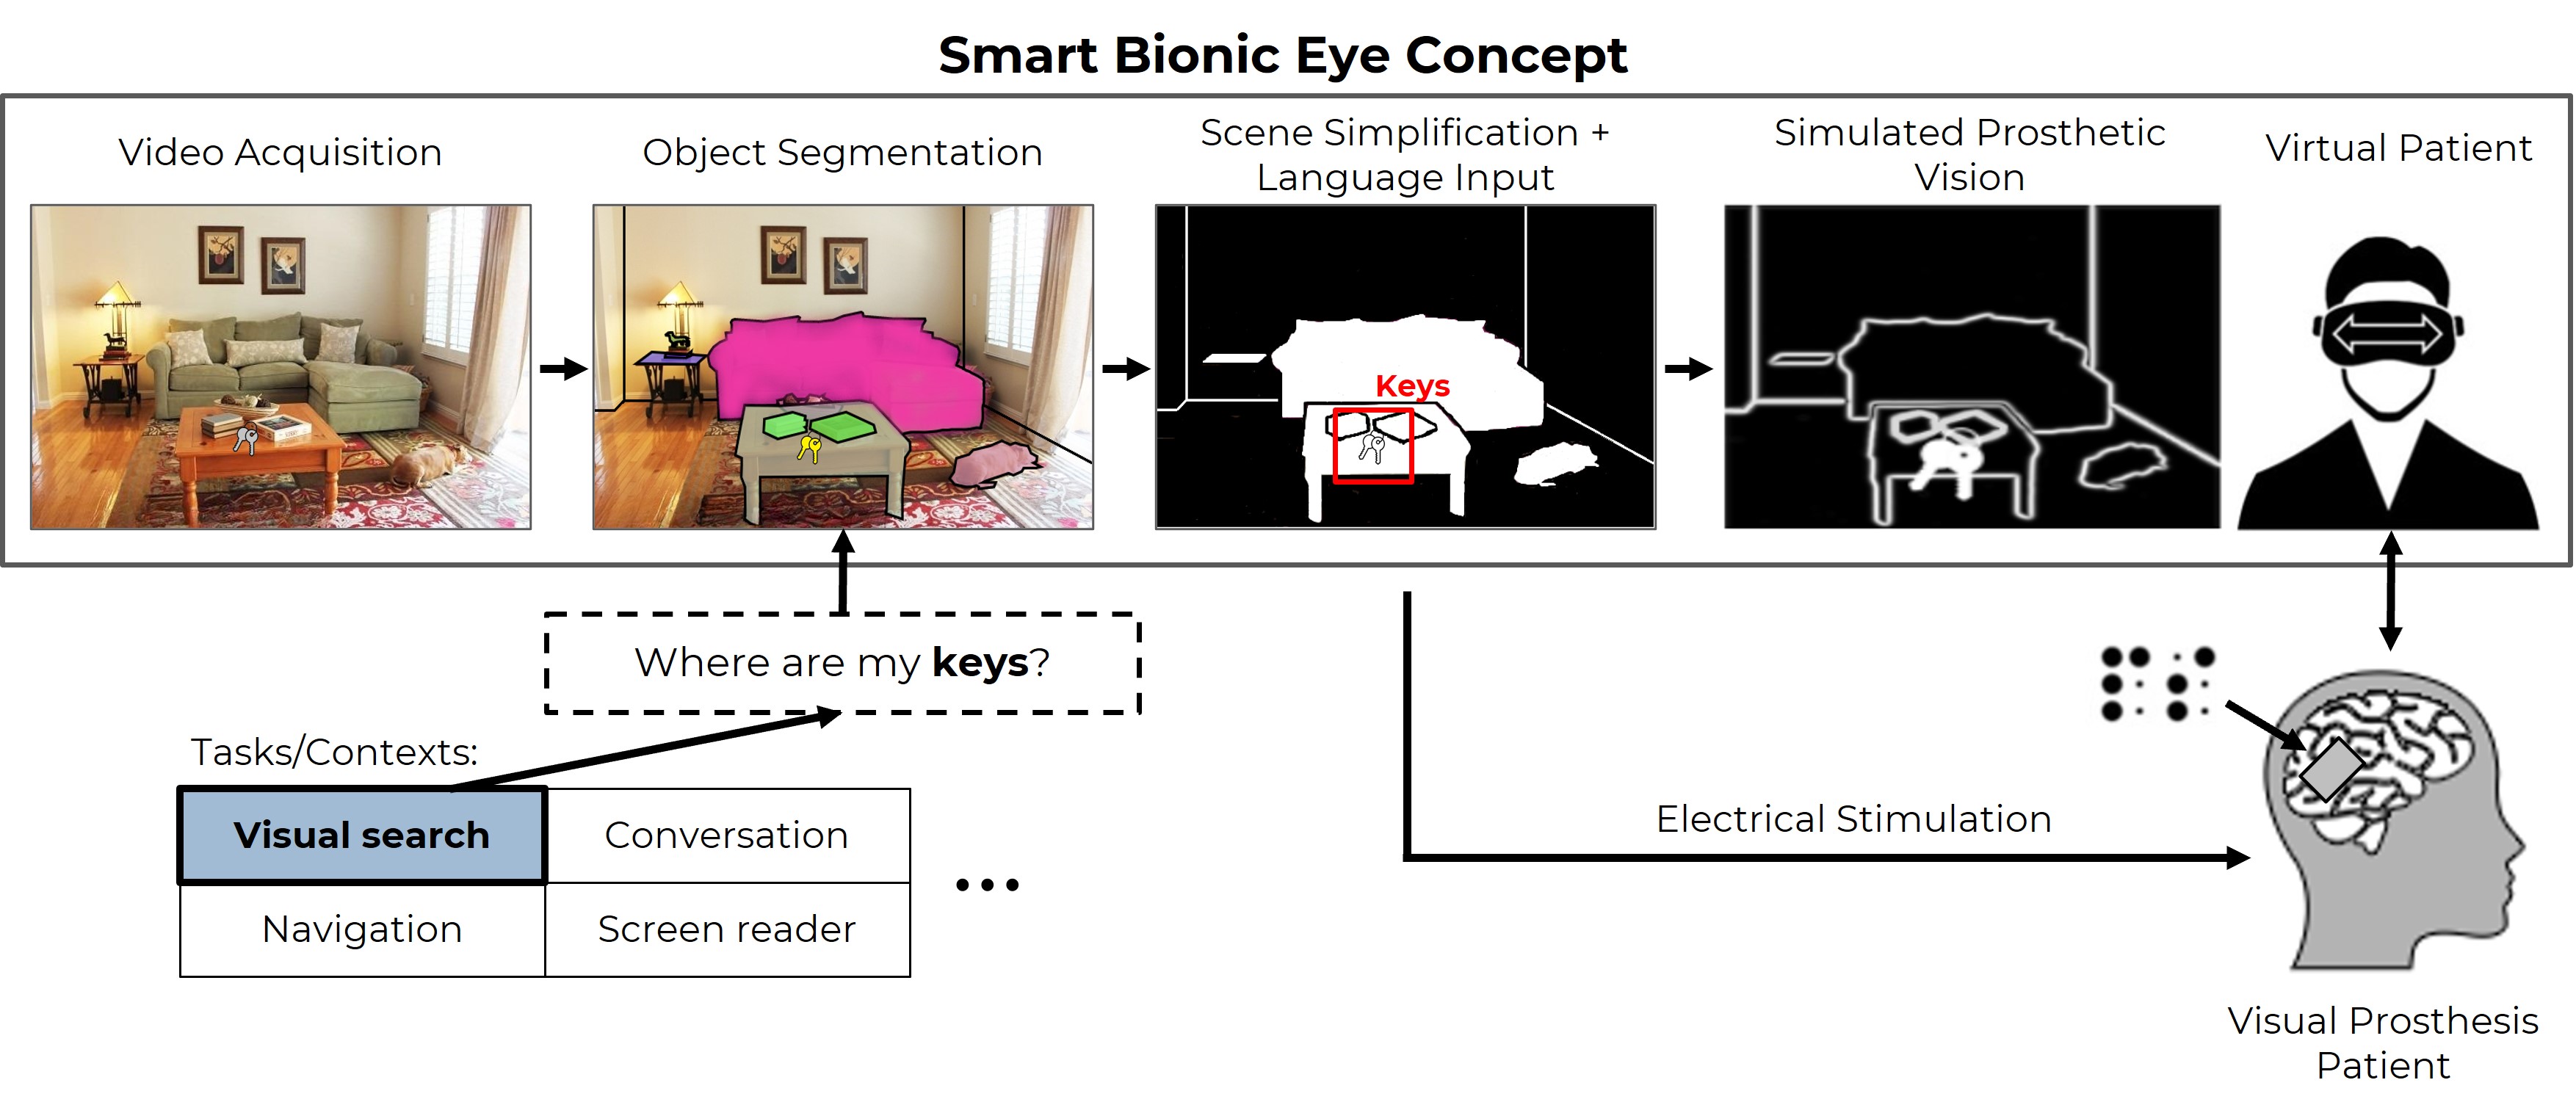 Smart Bionic Eye concept